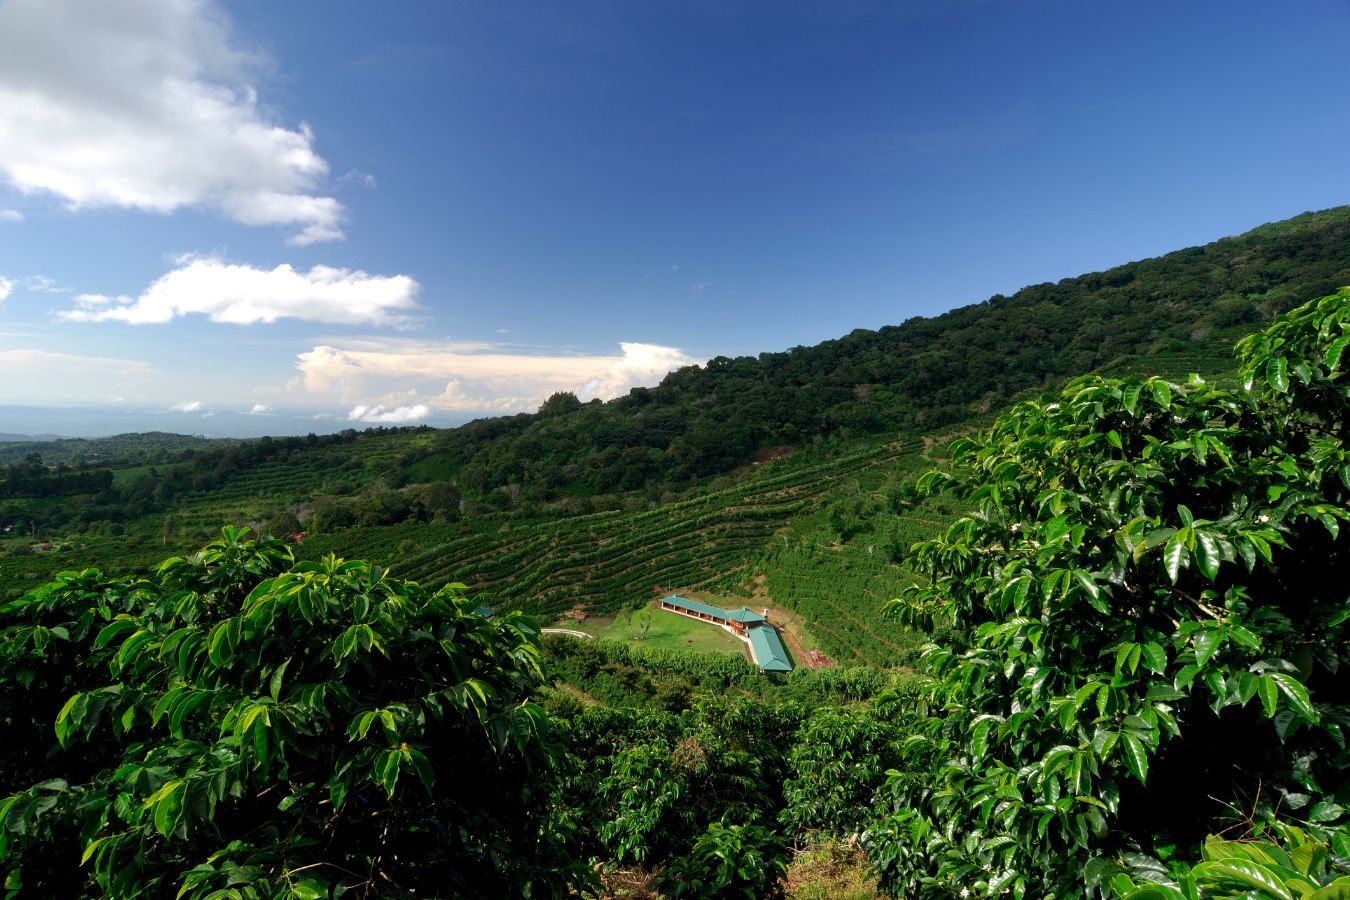 Tanzania Coffee - Coffee Production In Tanzania